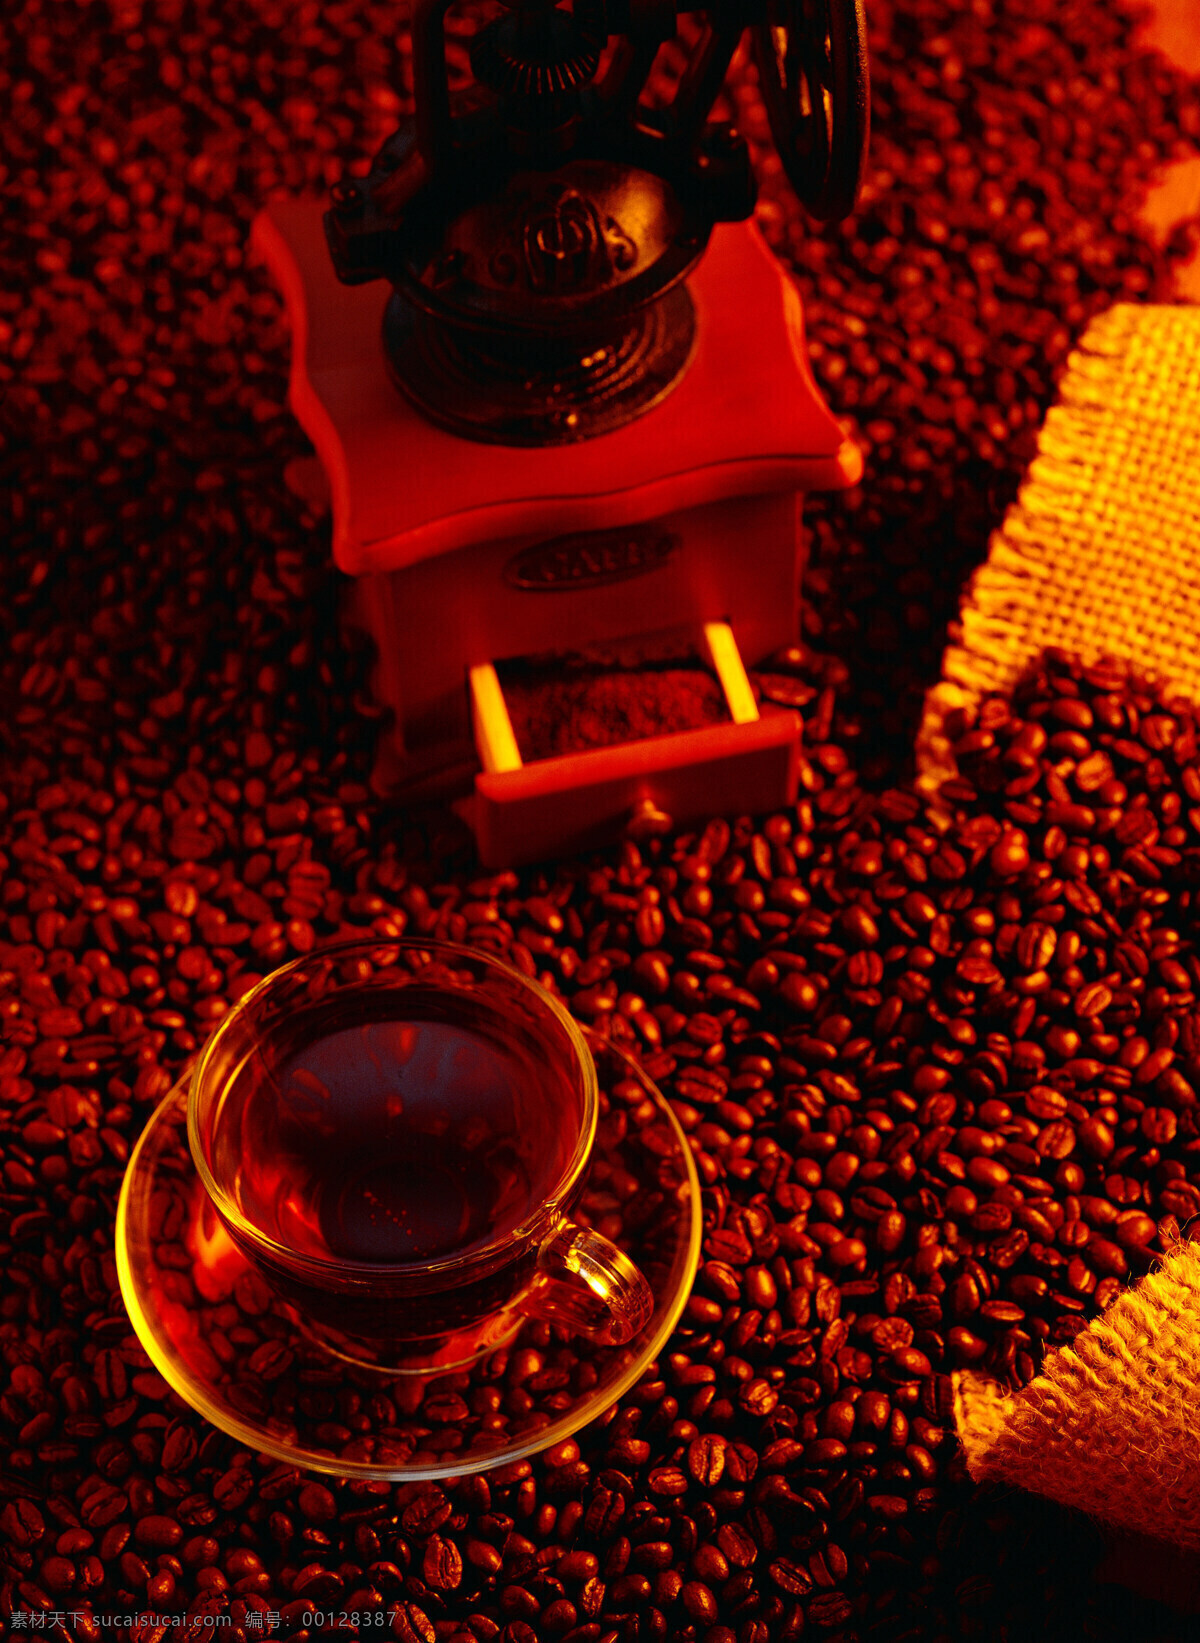 咖啡豆 上 玻璃杯 咖啡 一堆咖啡豆 颗粒 果实 饱满 许多 很多 coffee 浓香 褐色 托盘 杯子 搅拌机 粉碎机 麻袋 包装 铺垫 高清图片 咖啡图片 餐饮美食